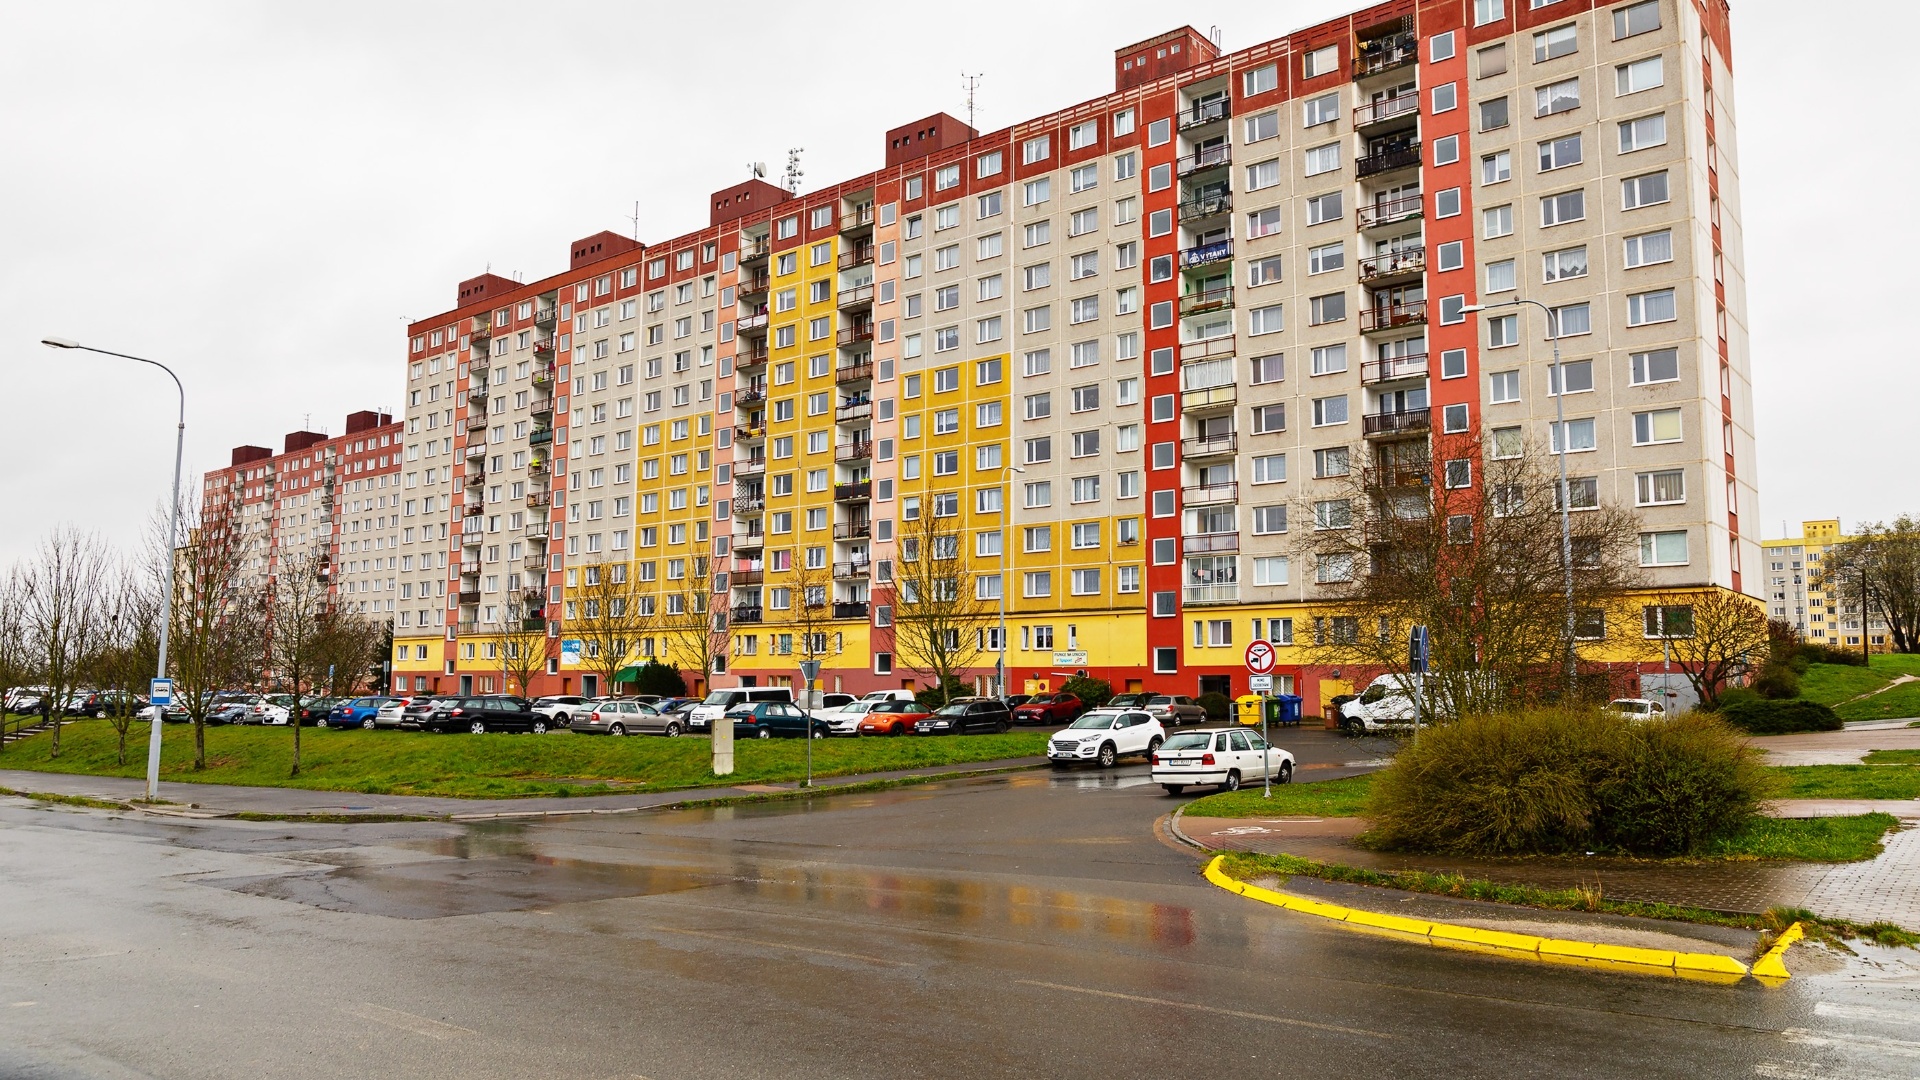 Pronájem bytu 1+kk po kompletní rekonstrukci, 32 m2, ulice Hodonínská ulice, Plzeň - Severní Předměstí